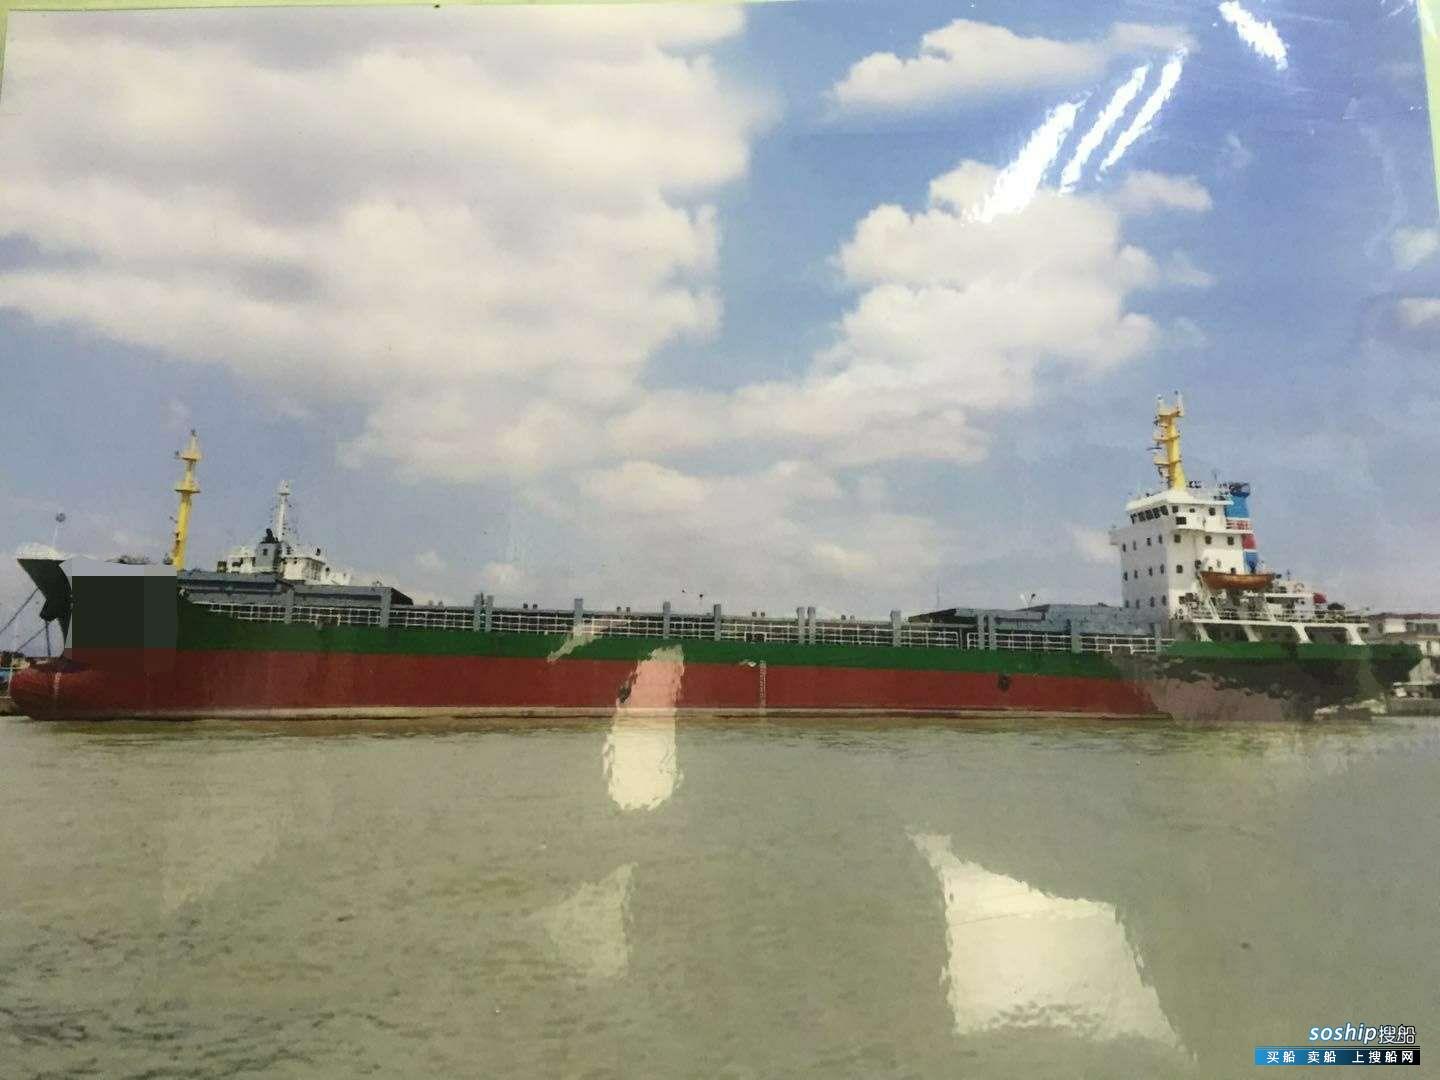 目前最大的集装箱船 出售5060吨集装箱船